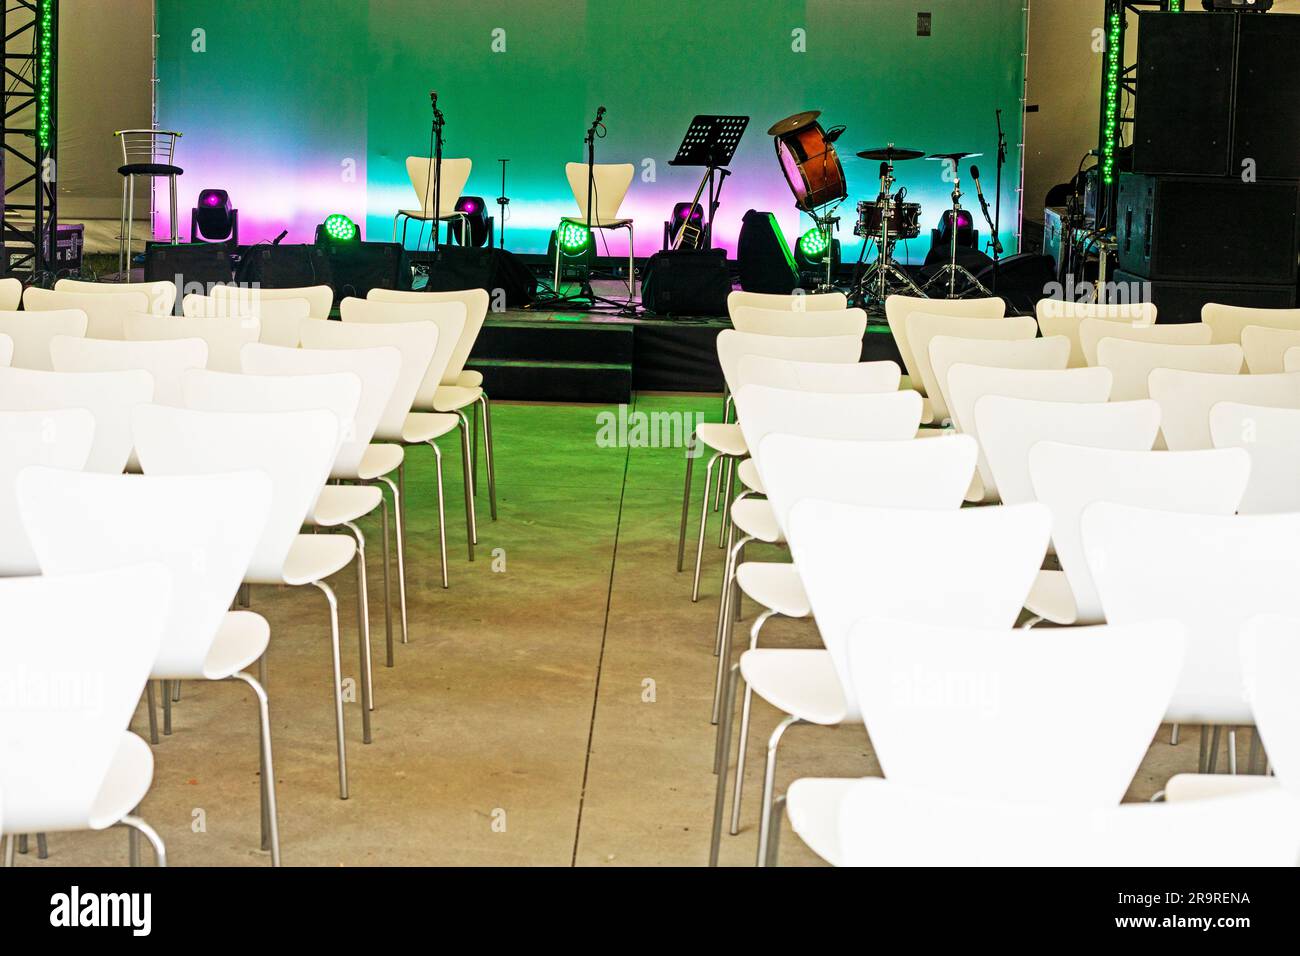 concerto di musica prima dello spettacolo con sedie bianche. orizzontale Foto Stock